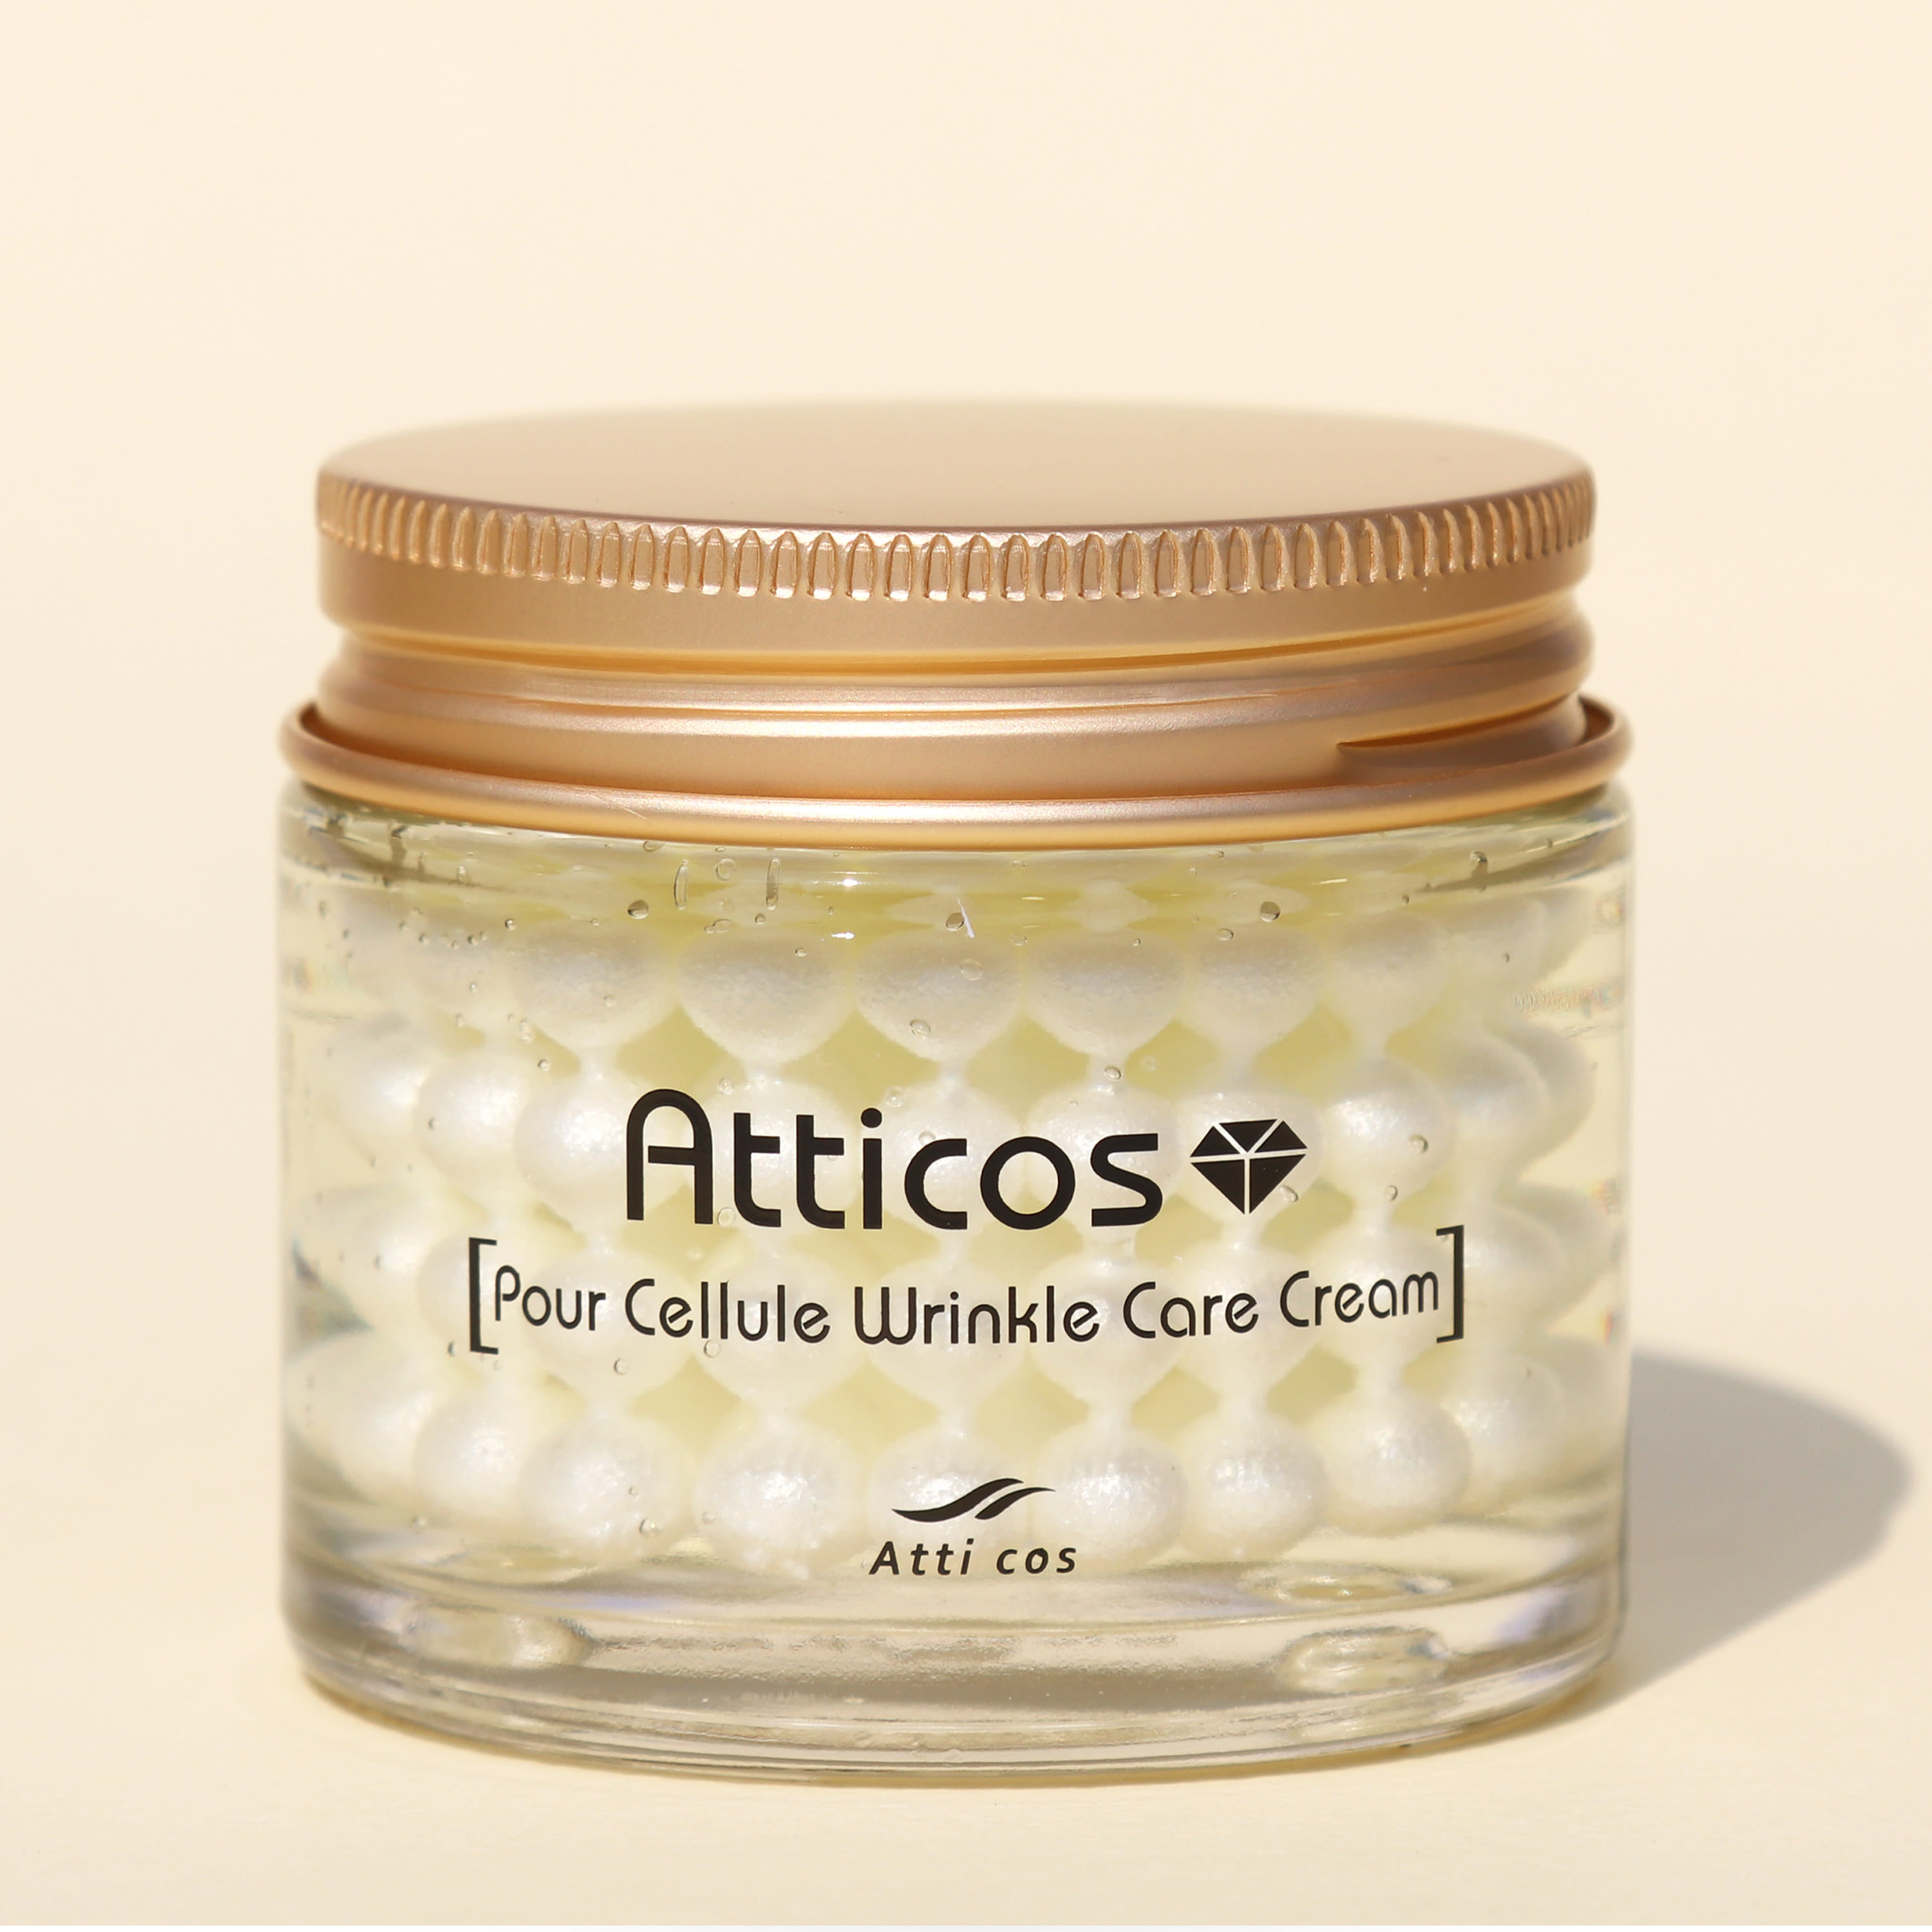 ATICOS 保時捷抗皺護理面霜 70g/多效合一皺紋護理